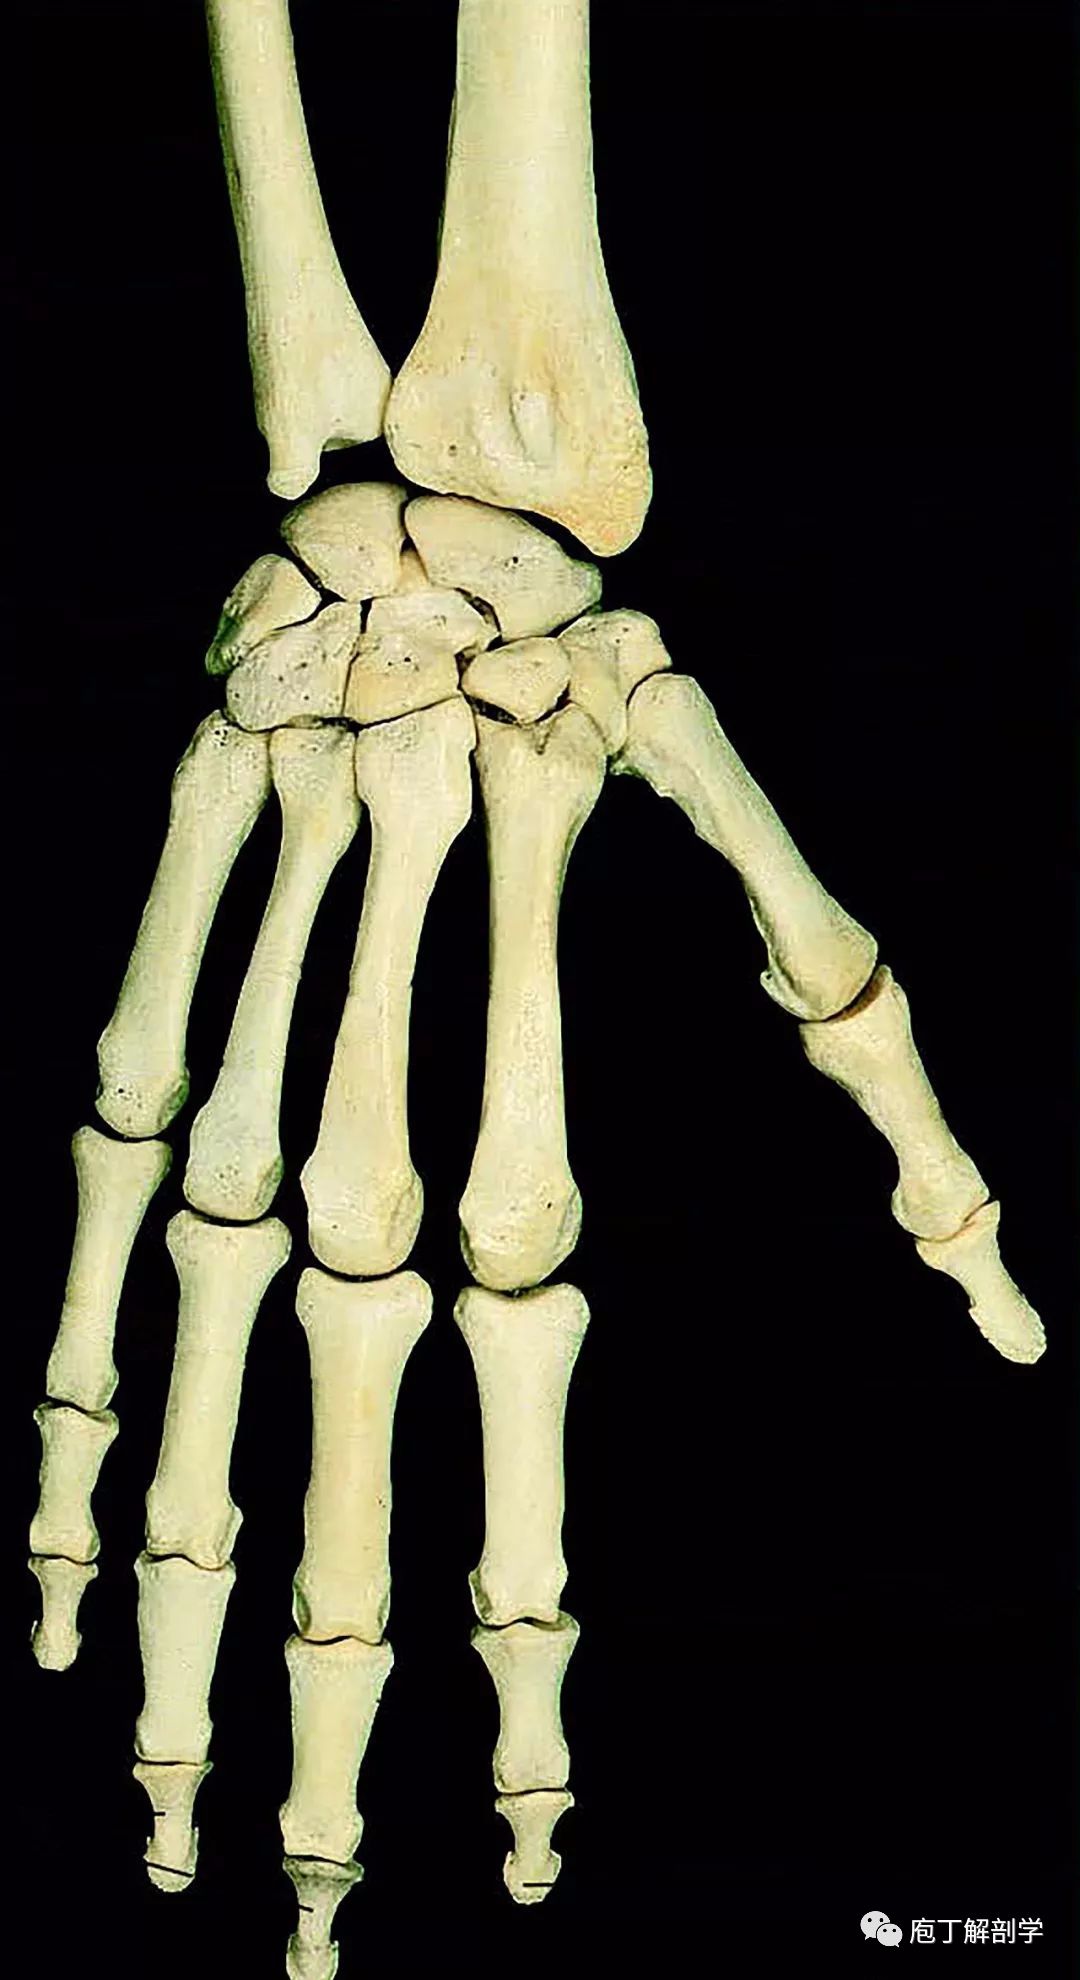 图4-5 桡骨和尺骨(分离)-外科学-医学